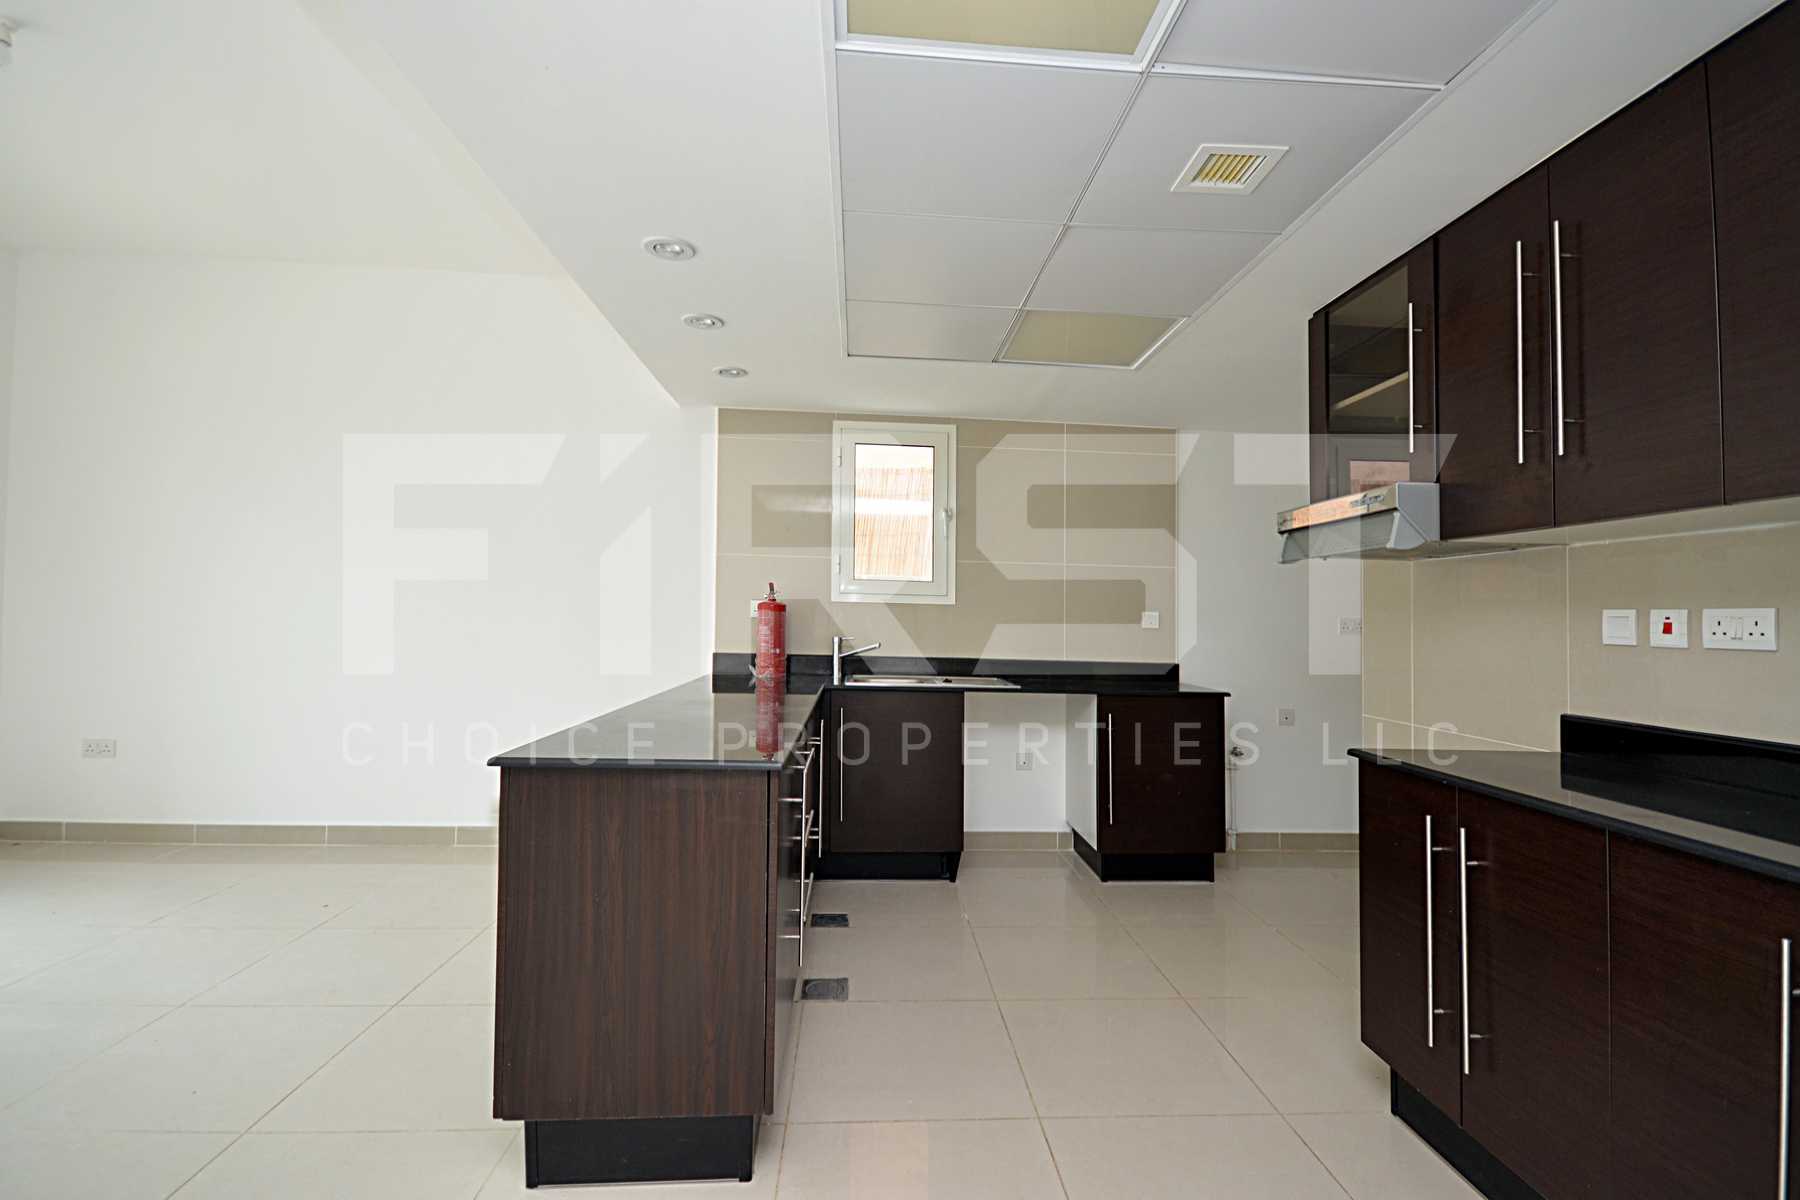 Internal Photo of 4 Bedroom Villa in Al Reef Villas Al Reef Abu Dhabi UAE  2858 sq (7).jpg